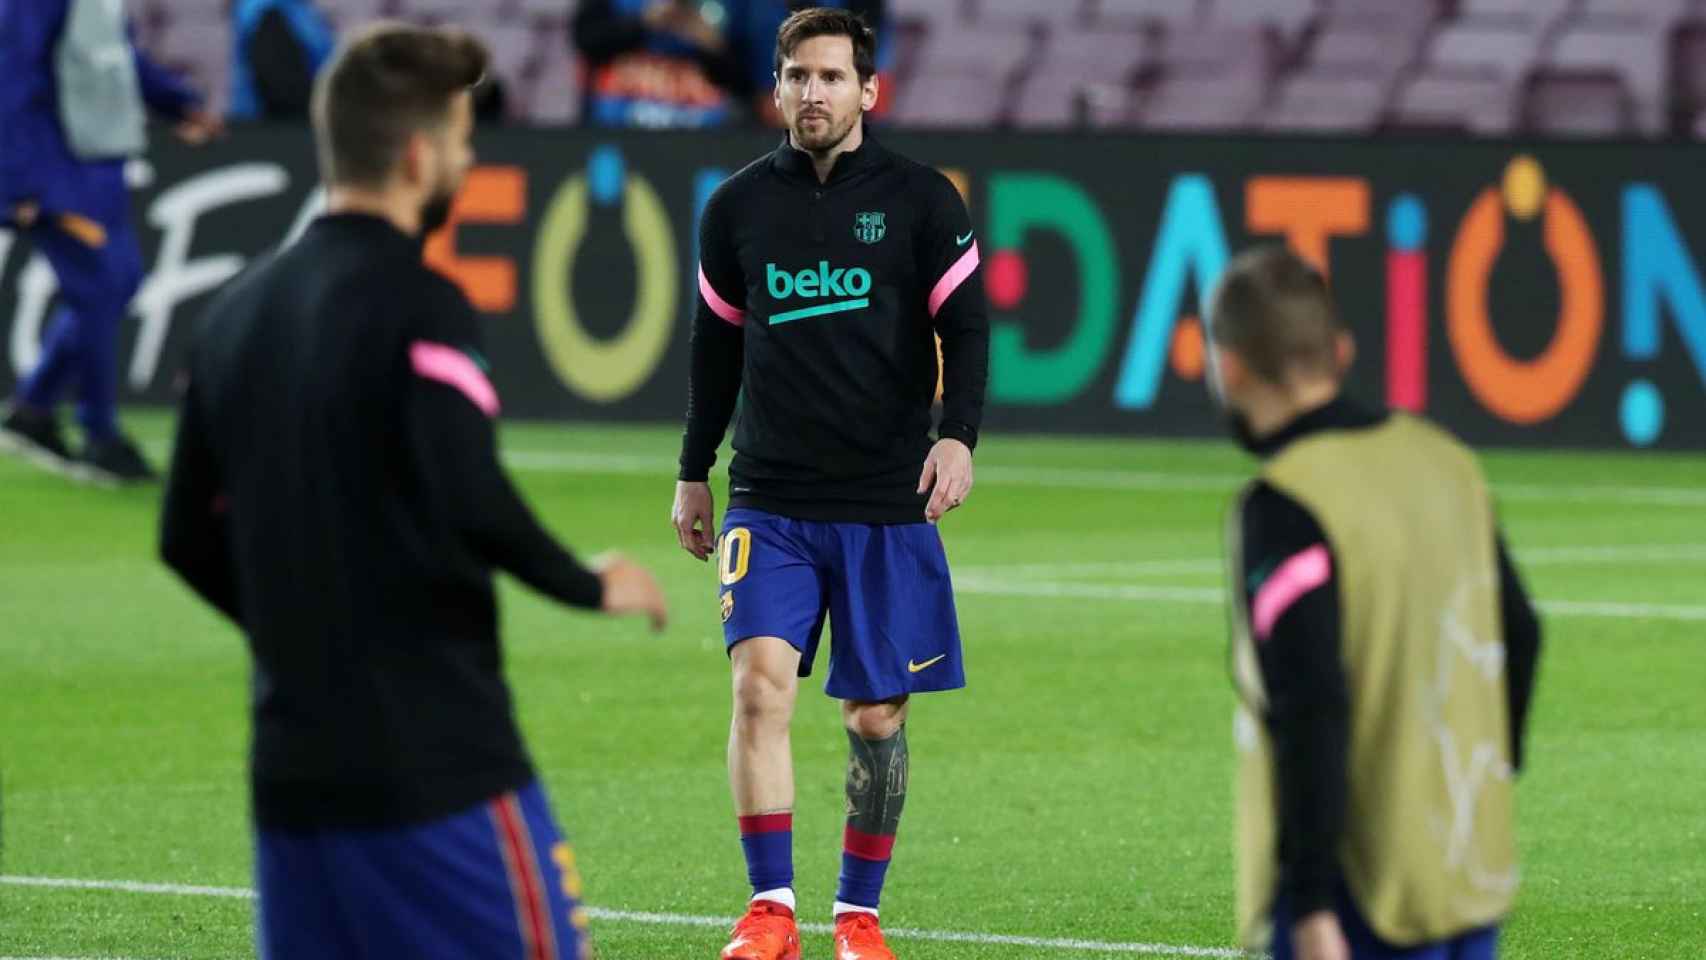 Leo Messi calentando antes del partido contra el Dínamo de Kiev / FC Barcelona